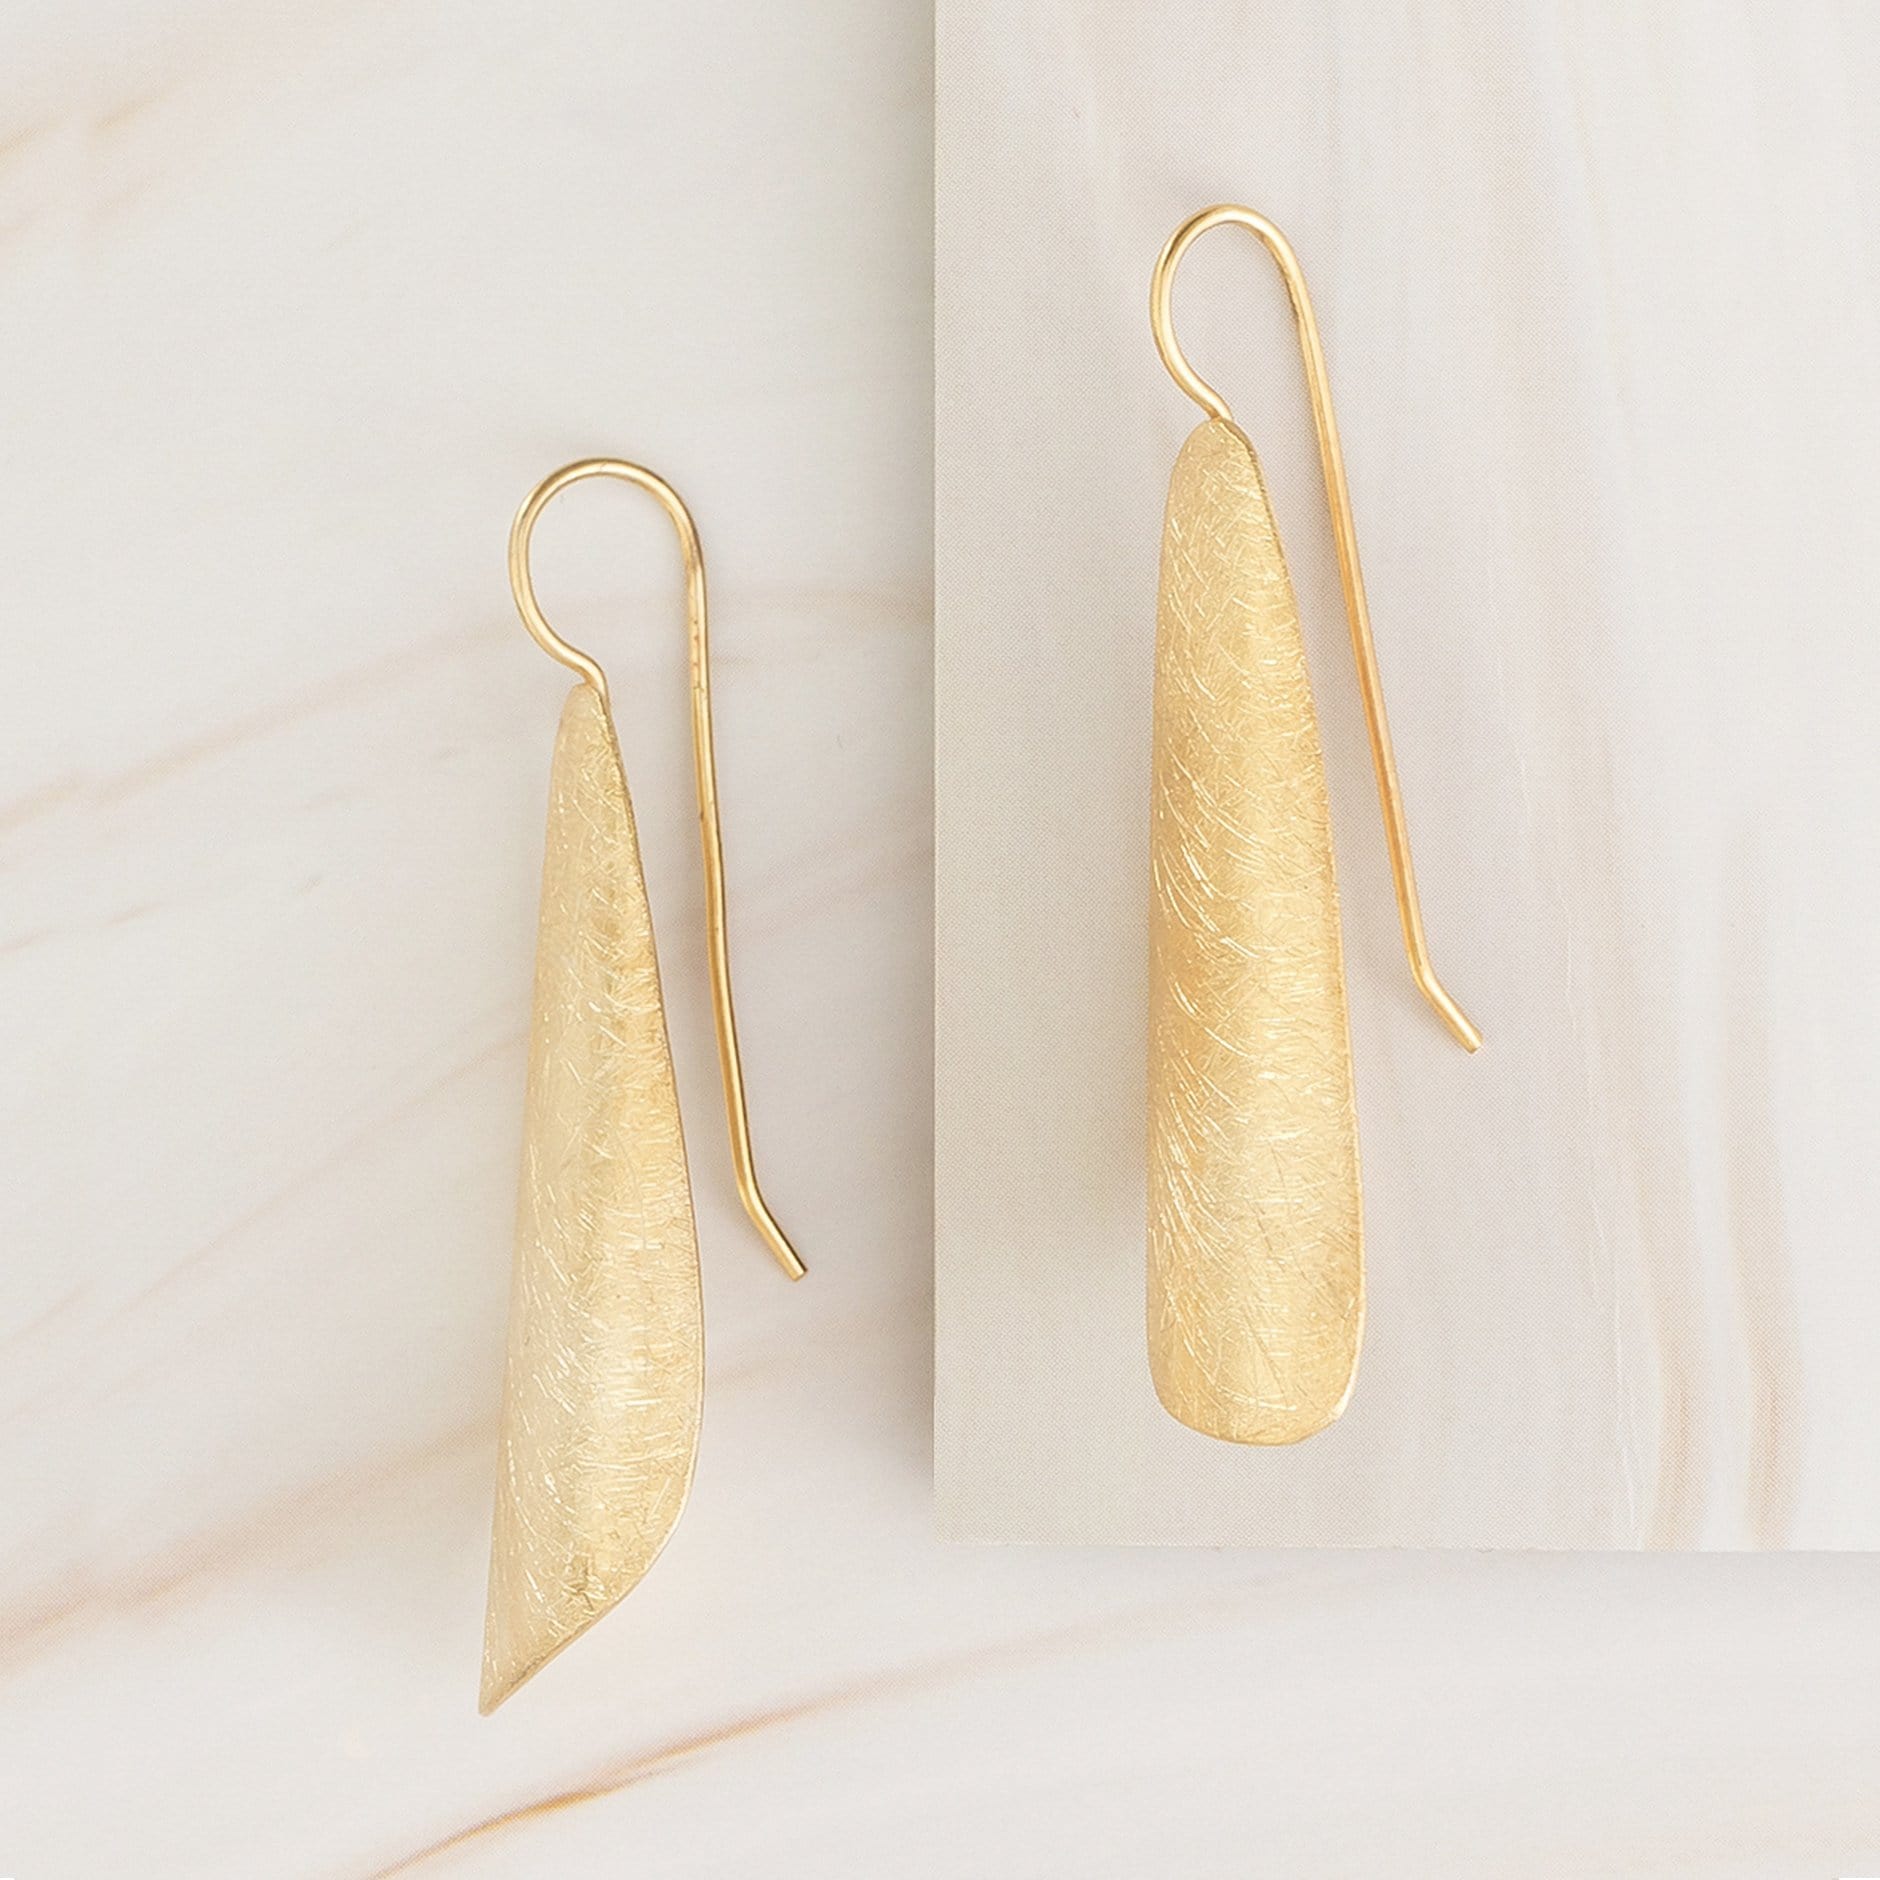 Emblem Jewelry Earrings Gold Tone Tapered Spade Statement Hook Earrings